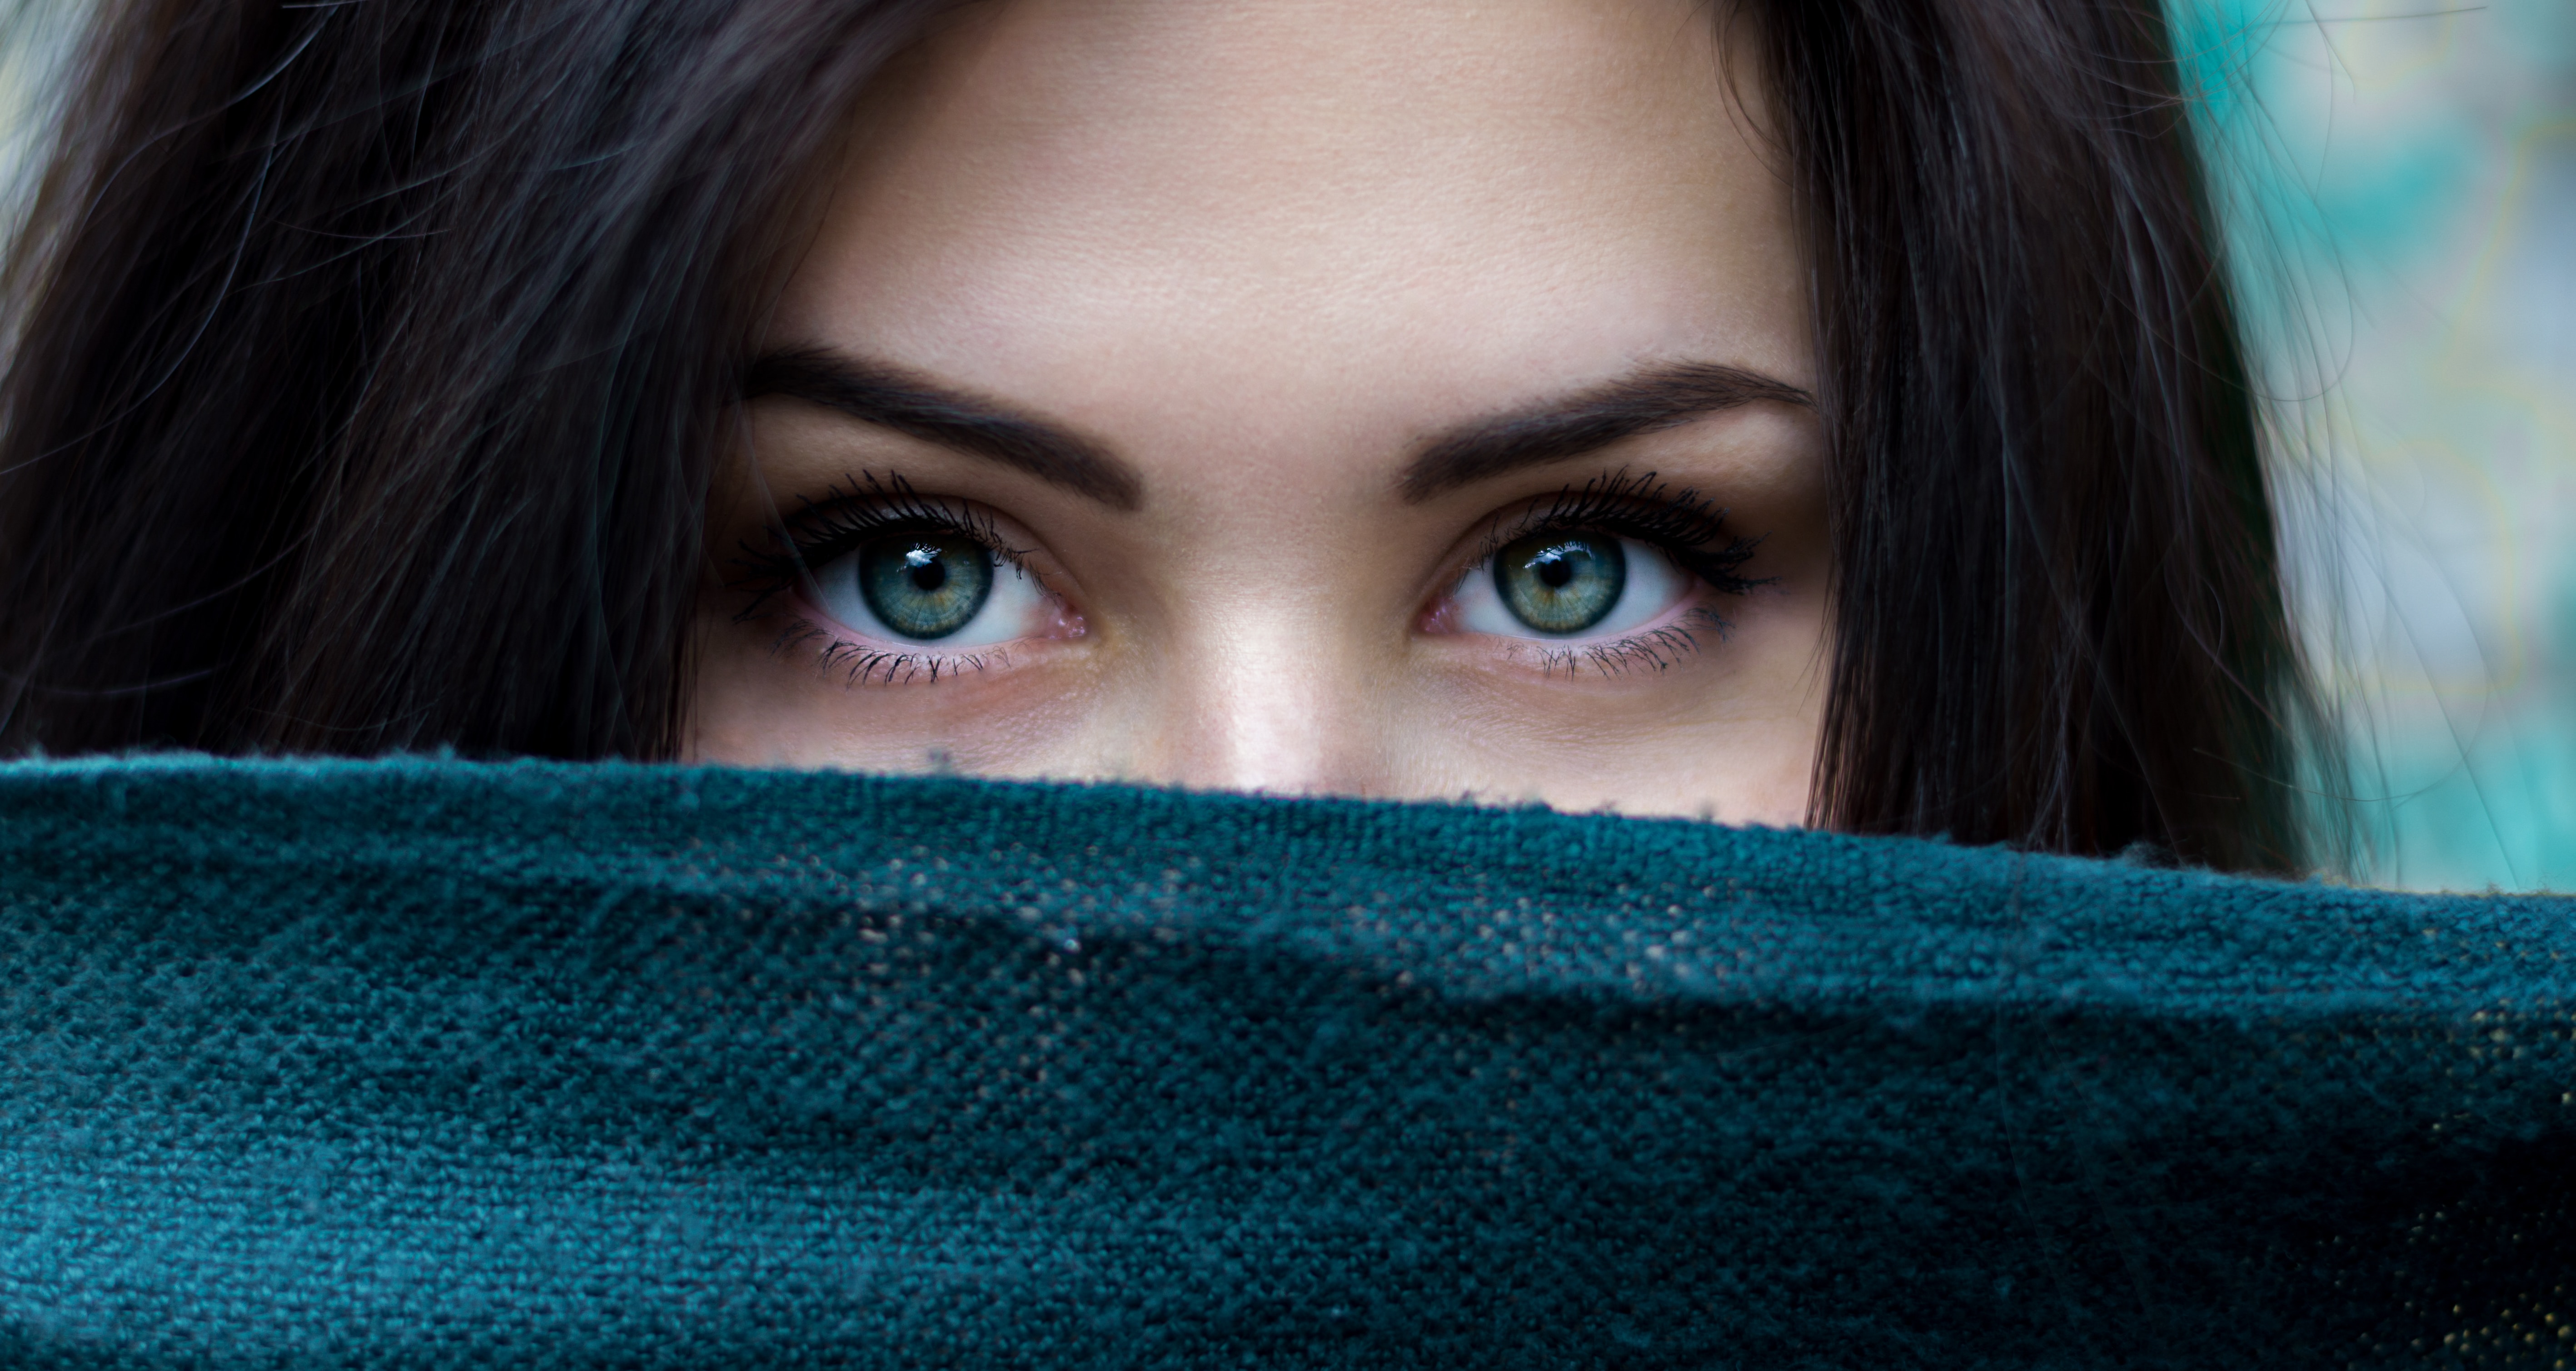 A woman's eyes │ Source: Unsplash